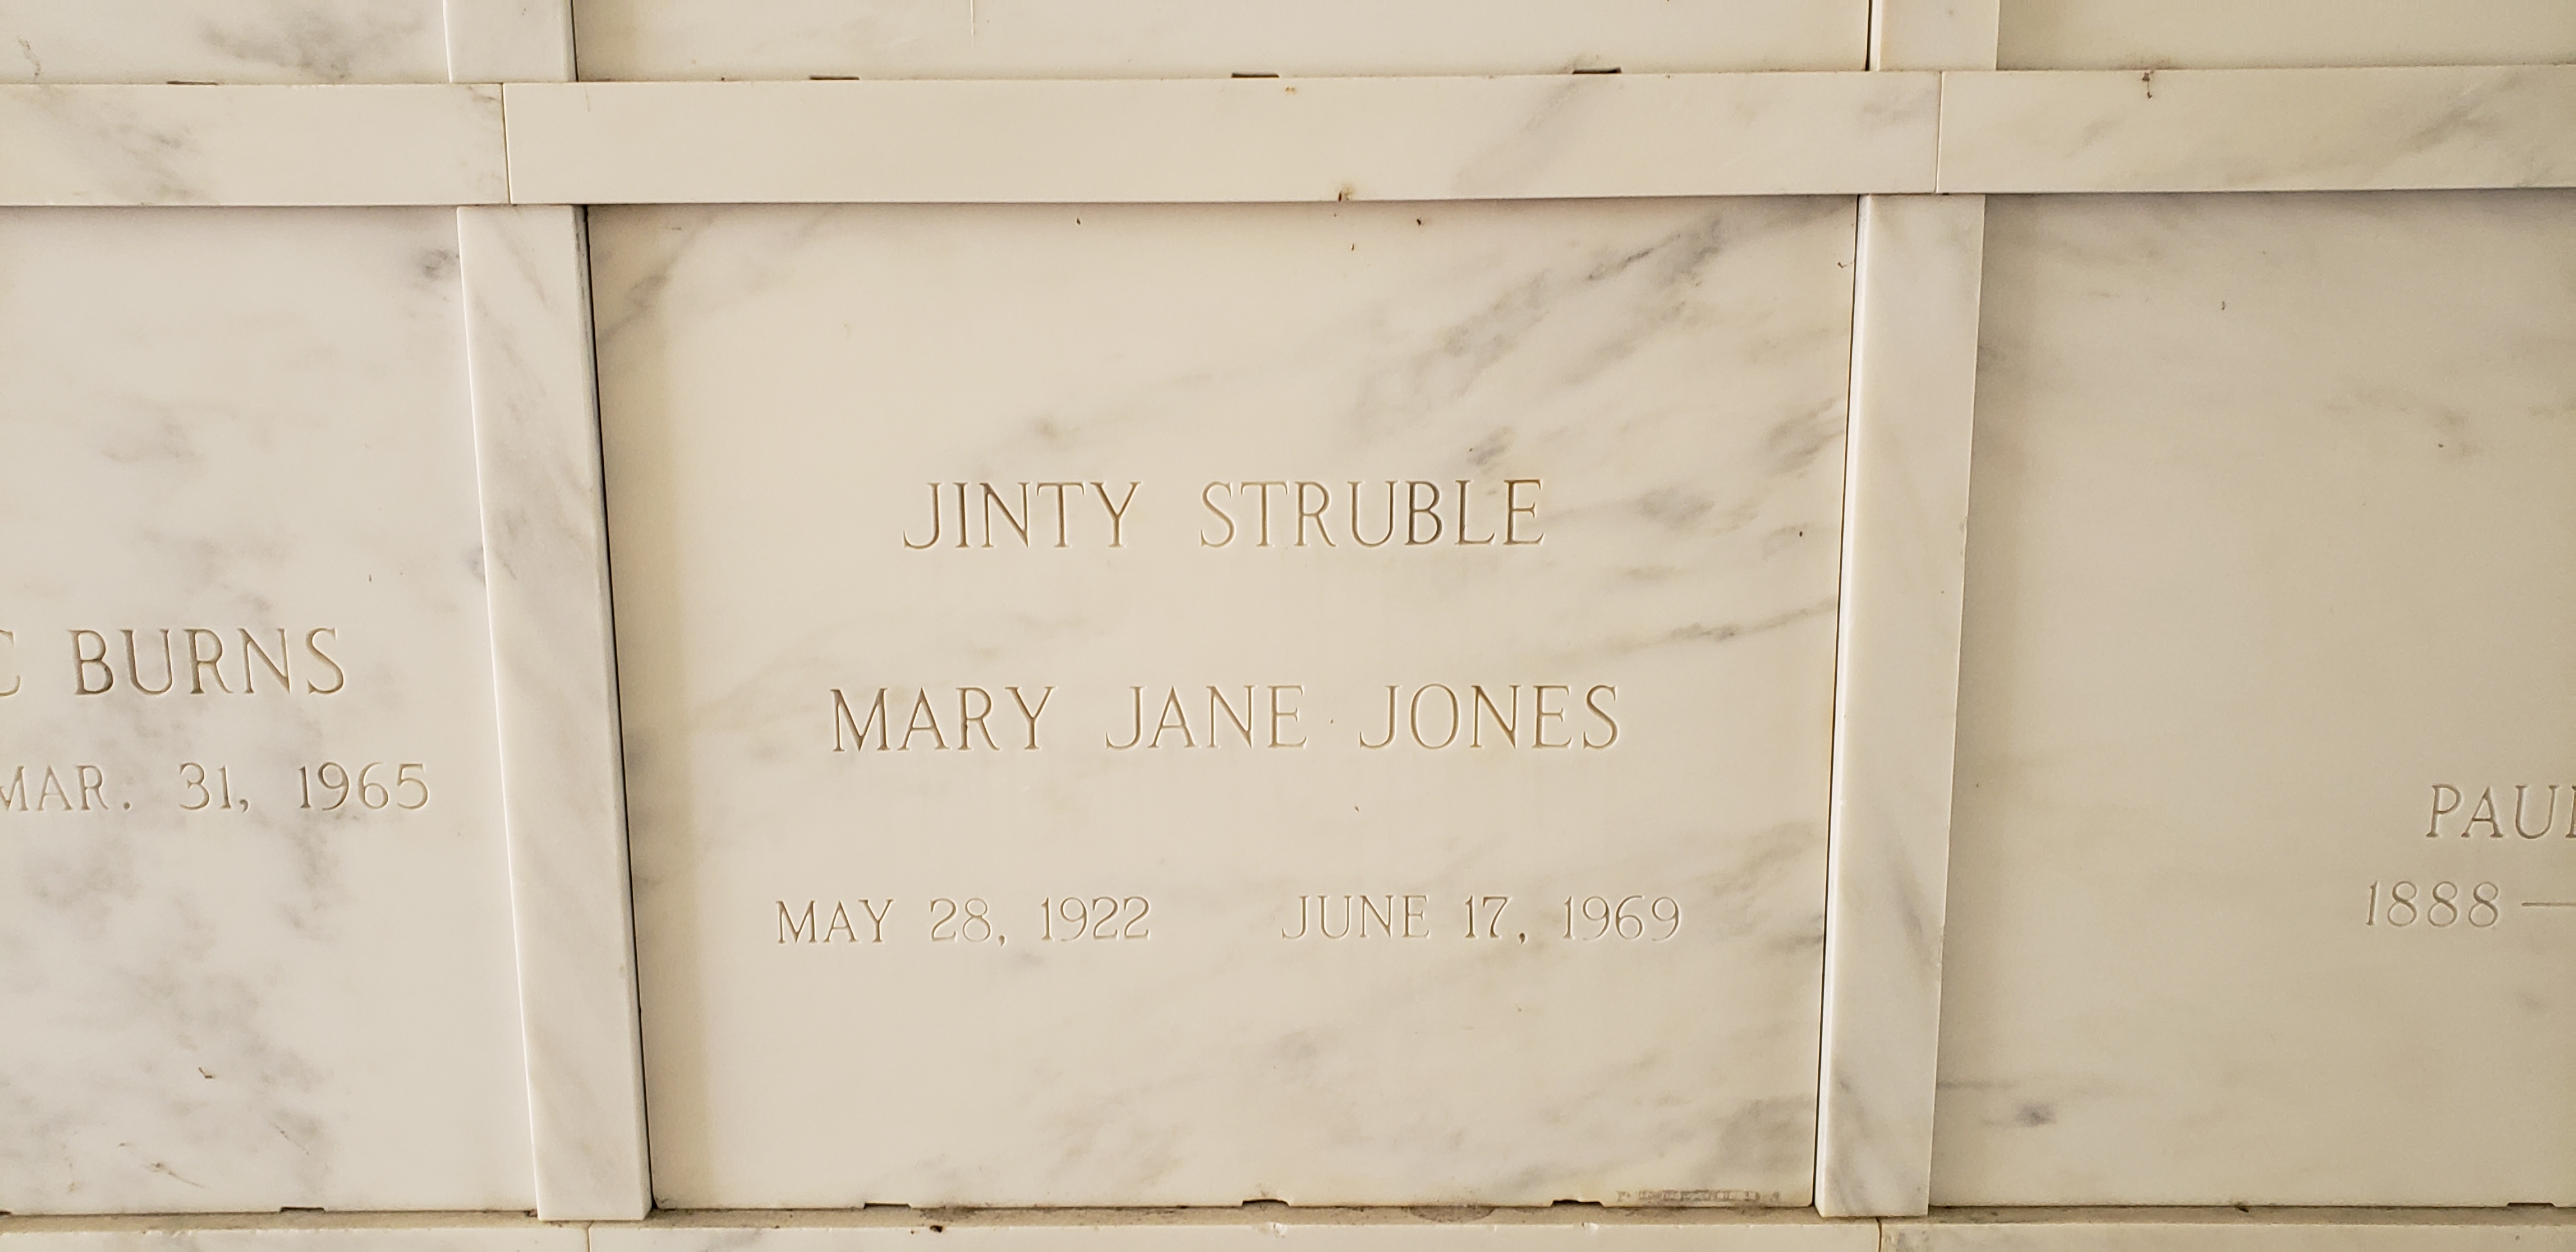 Mary Jane "Jinty Struble" Jones